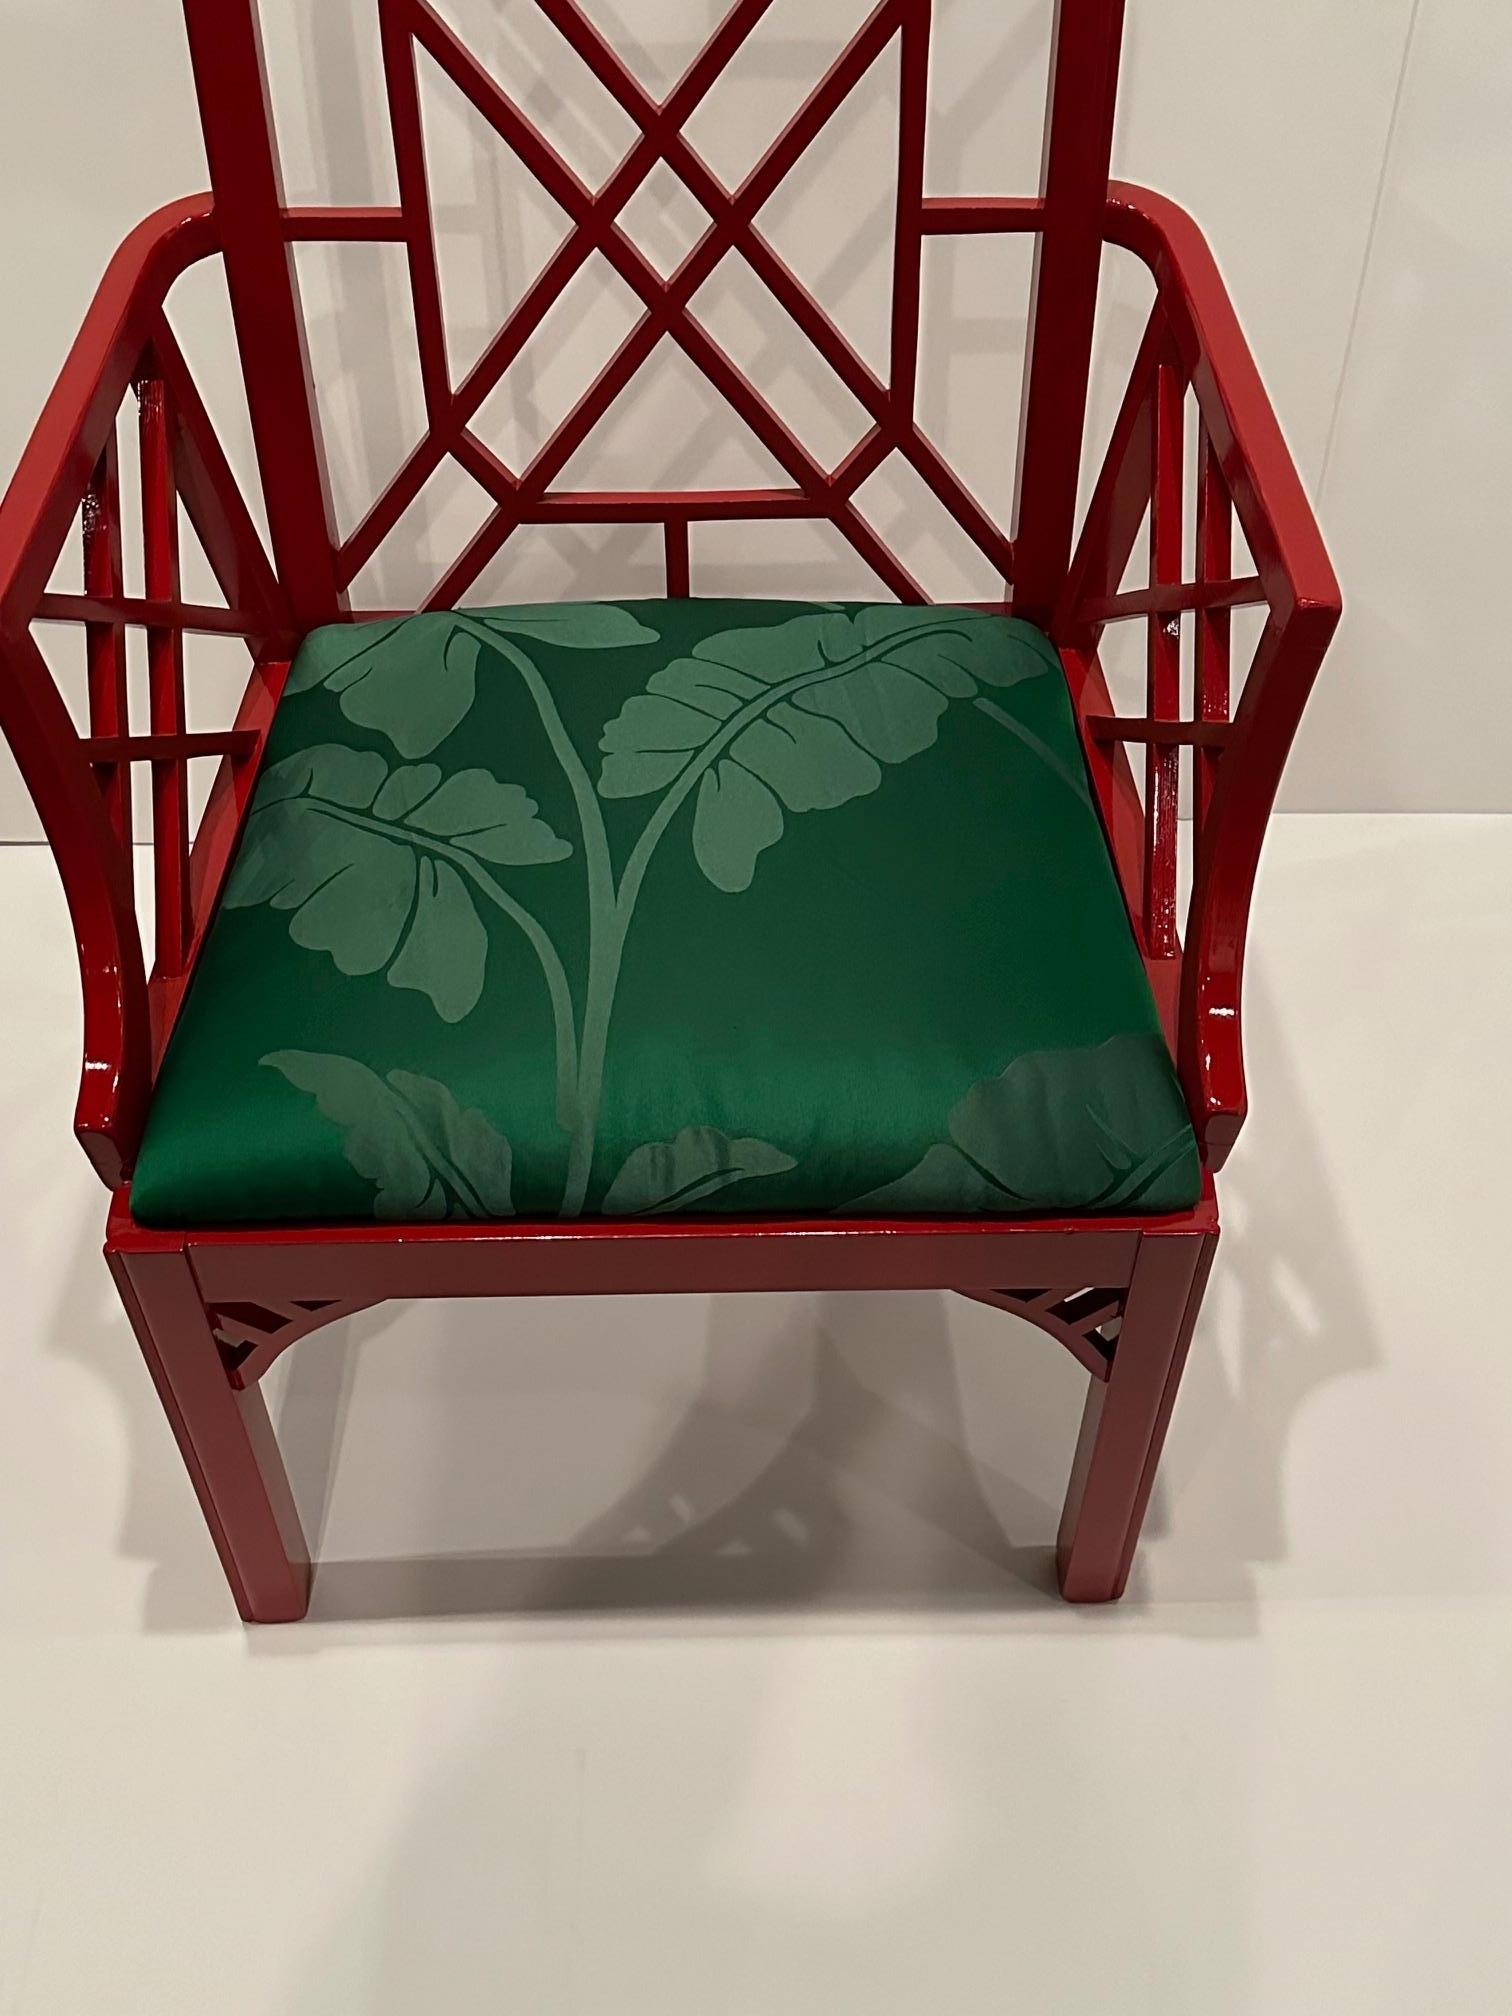 Glamouröser Sessel im chinesischen Chippendale-Stil aus rotem Lack mit kontrastierendem Sitzbezug aus grüner Seide mit Palmenmotiv.
Armhöhe 27,5